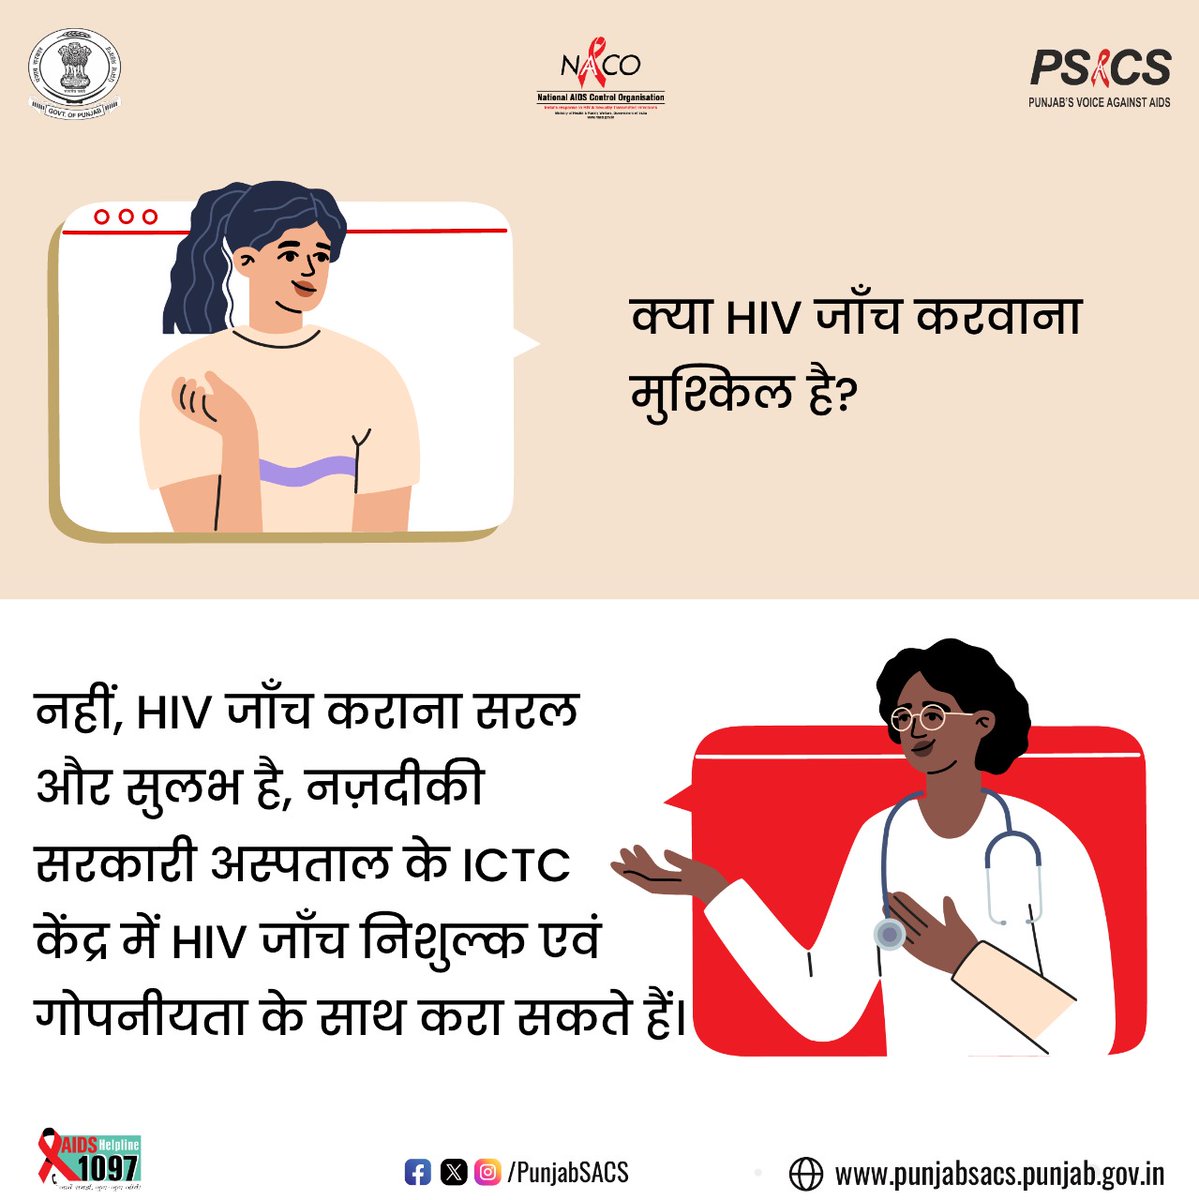 नहीं, HIV जाँच कराना सरल और सुलभ है, नज़दीकी सरकारी अस्पताल के ICTCकेंद्र में HIV जाँच निशुल्क एवं गोपनीयता के साथ करा सकते हैं।

#HIVTesting #GetTested #KnowYourHIVStatus #Dial1097 #KnowAIDS #HIVTestingisImportant #KnowHIV #HIVFreeIndia #CorrectInformation #NACOINDIA #NACO